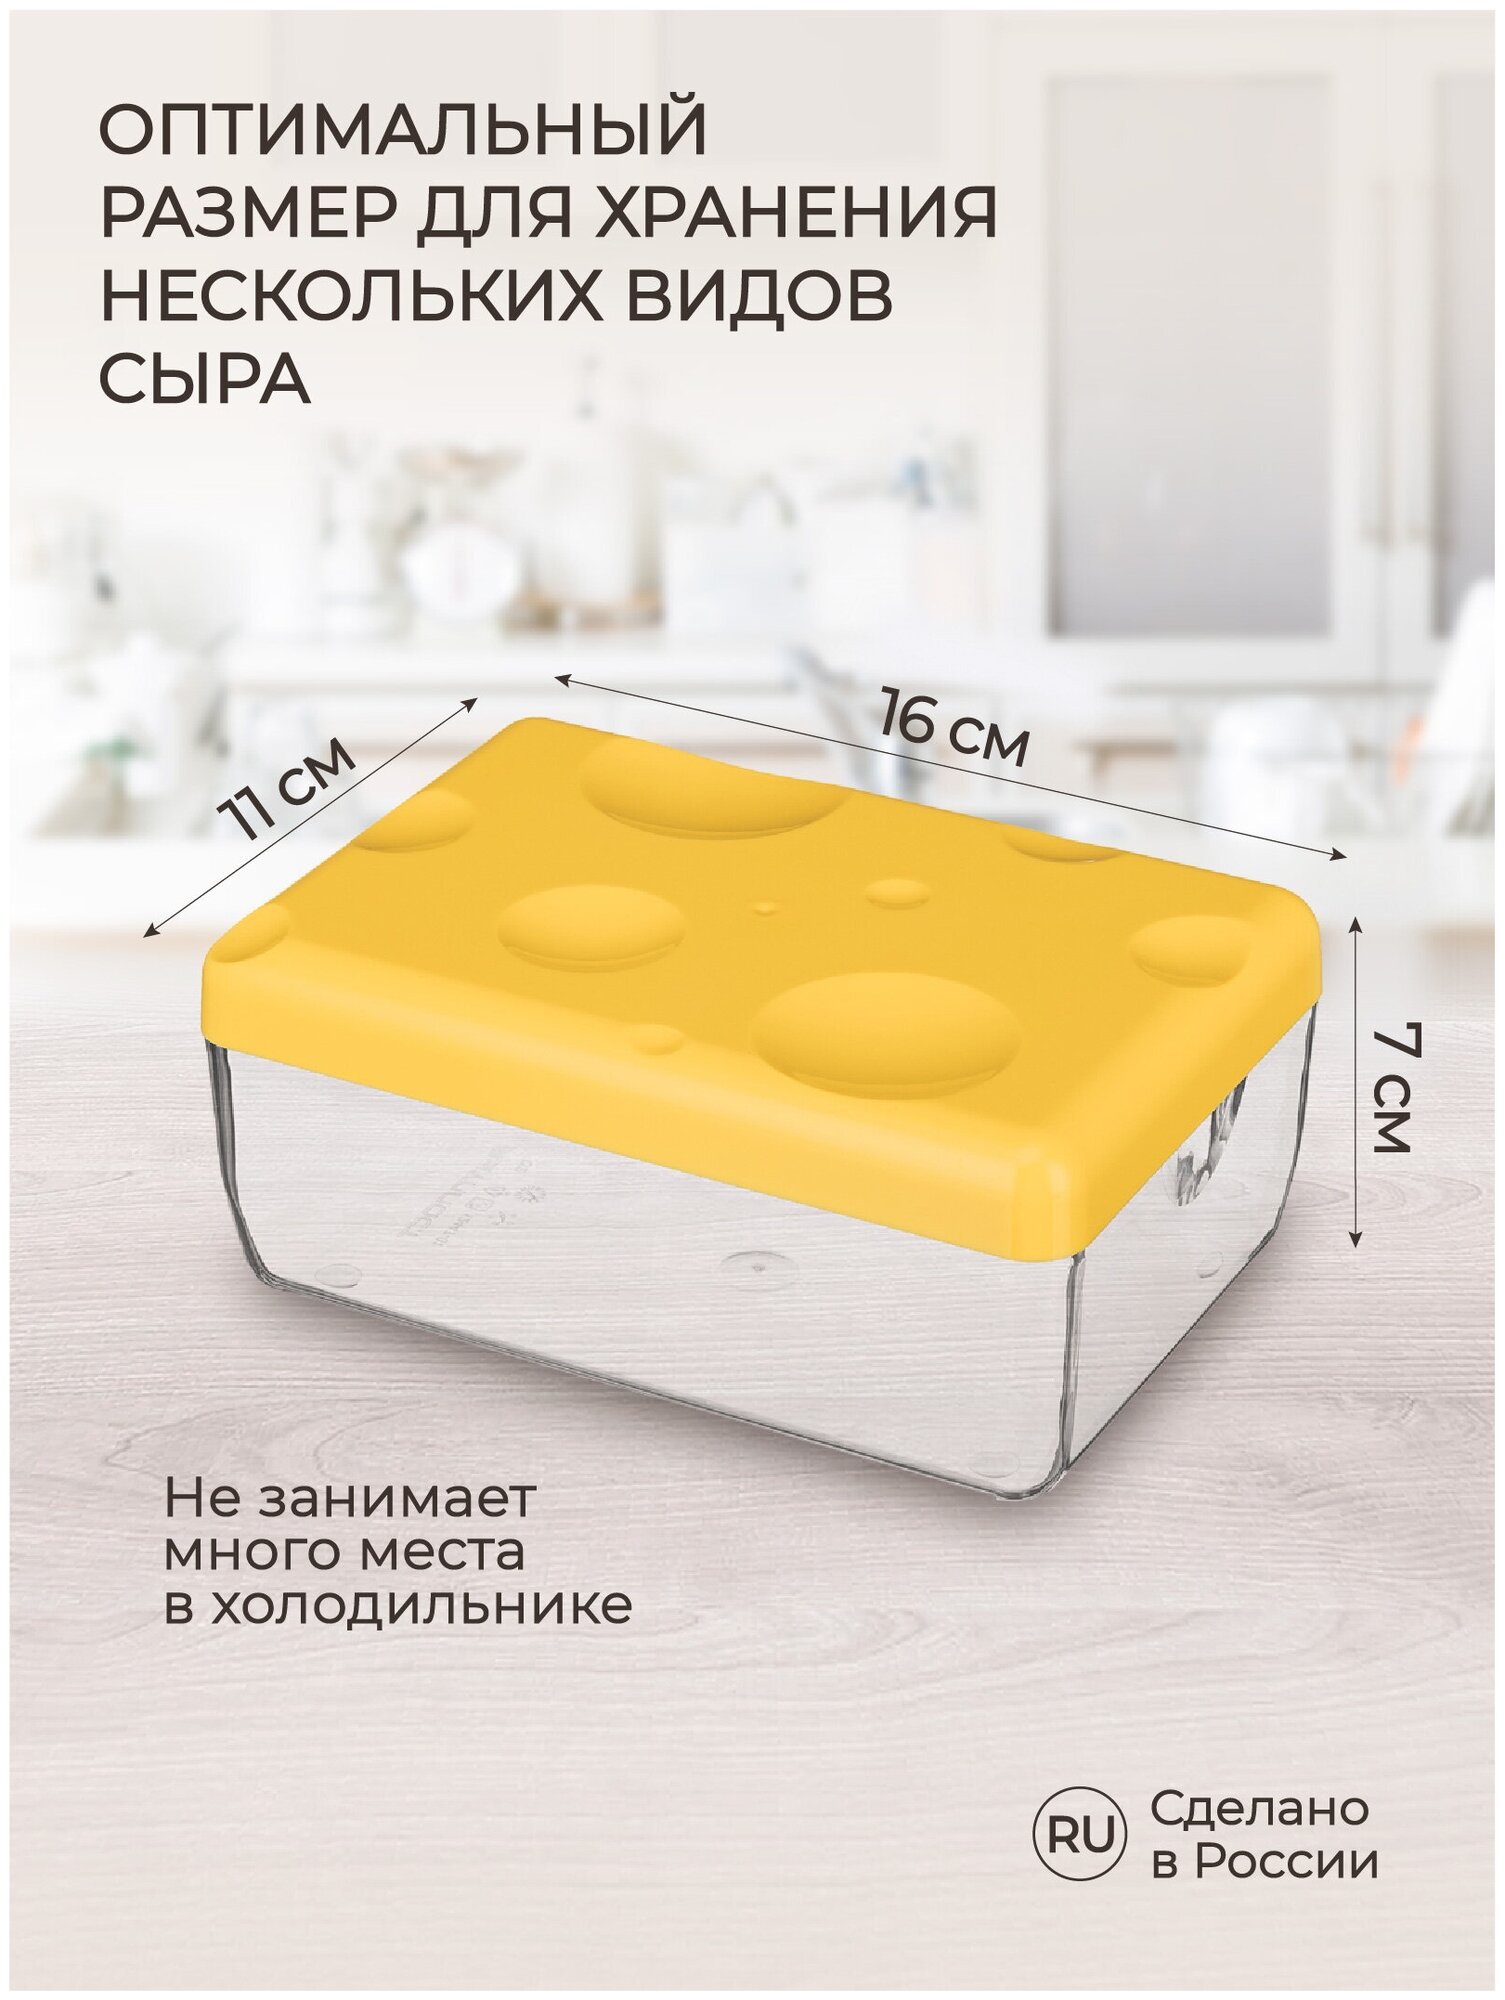 Контейнер для сыра (желтый)